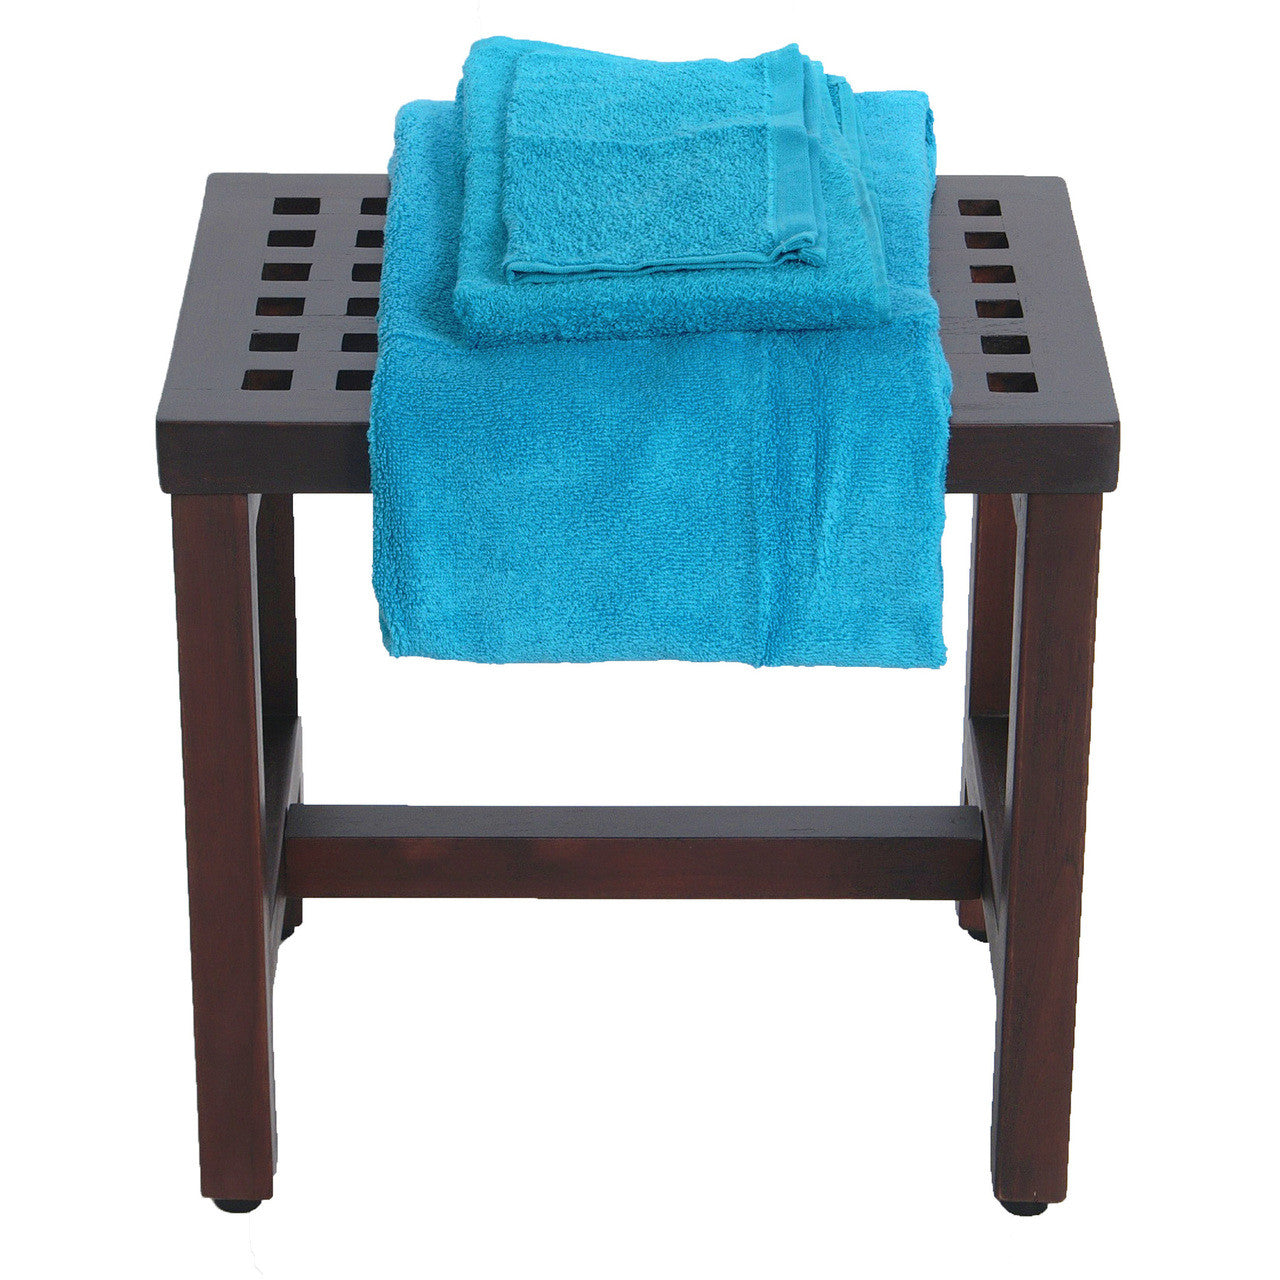 DecoTeak® Espalier® 18" Teak Wood Shower Bench in Woodland Brown Finish